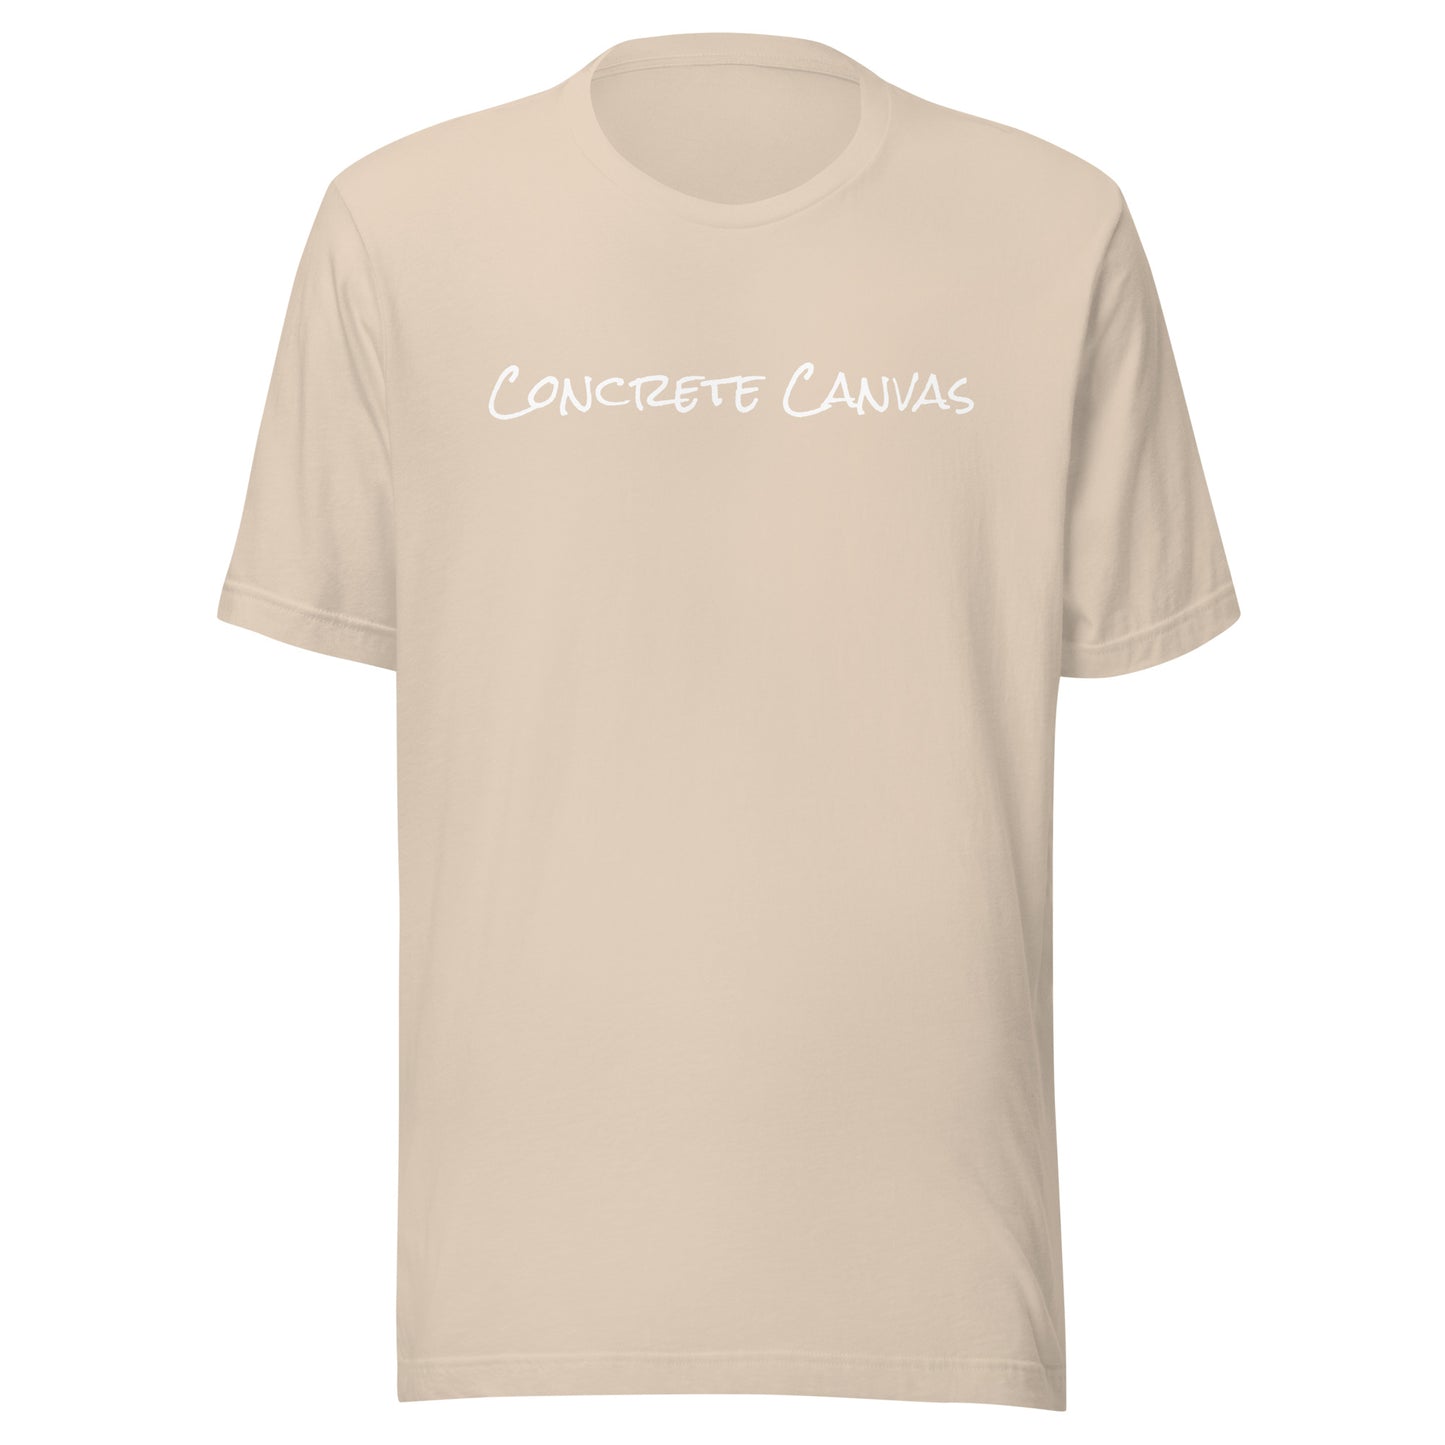 Concrete Canvas Unisex T-Shirt